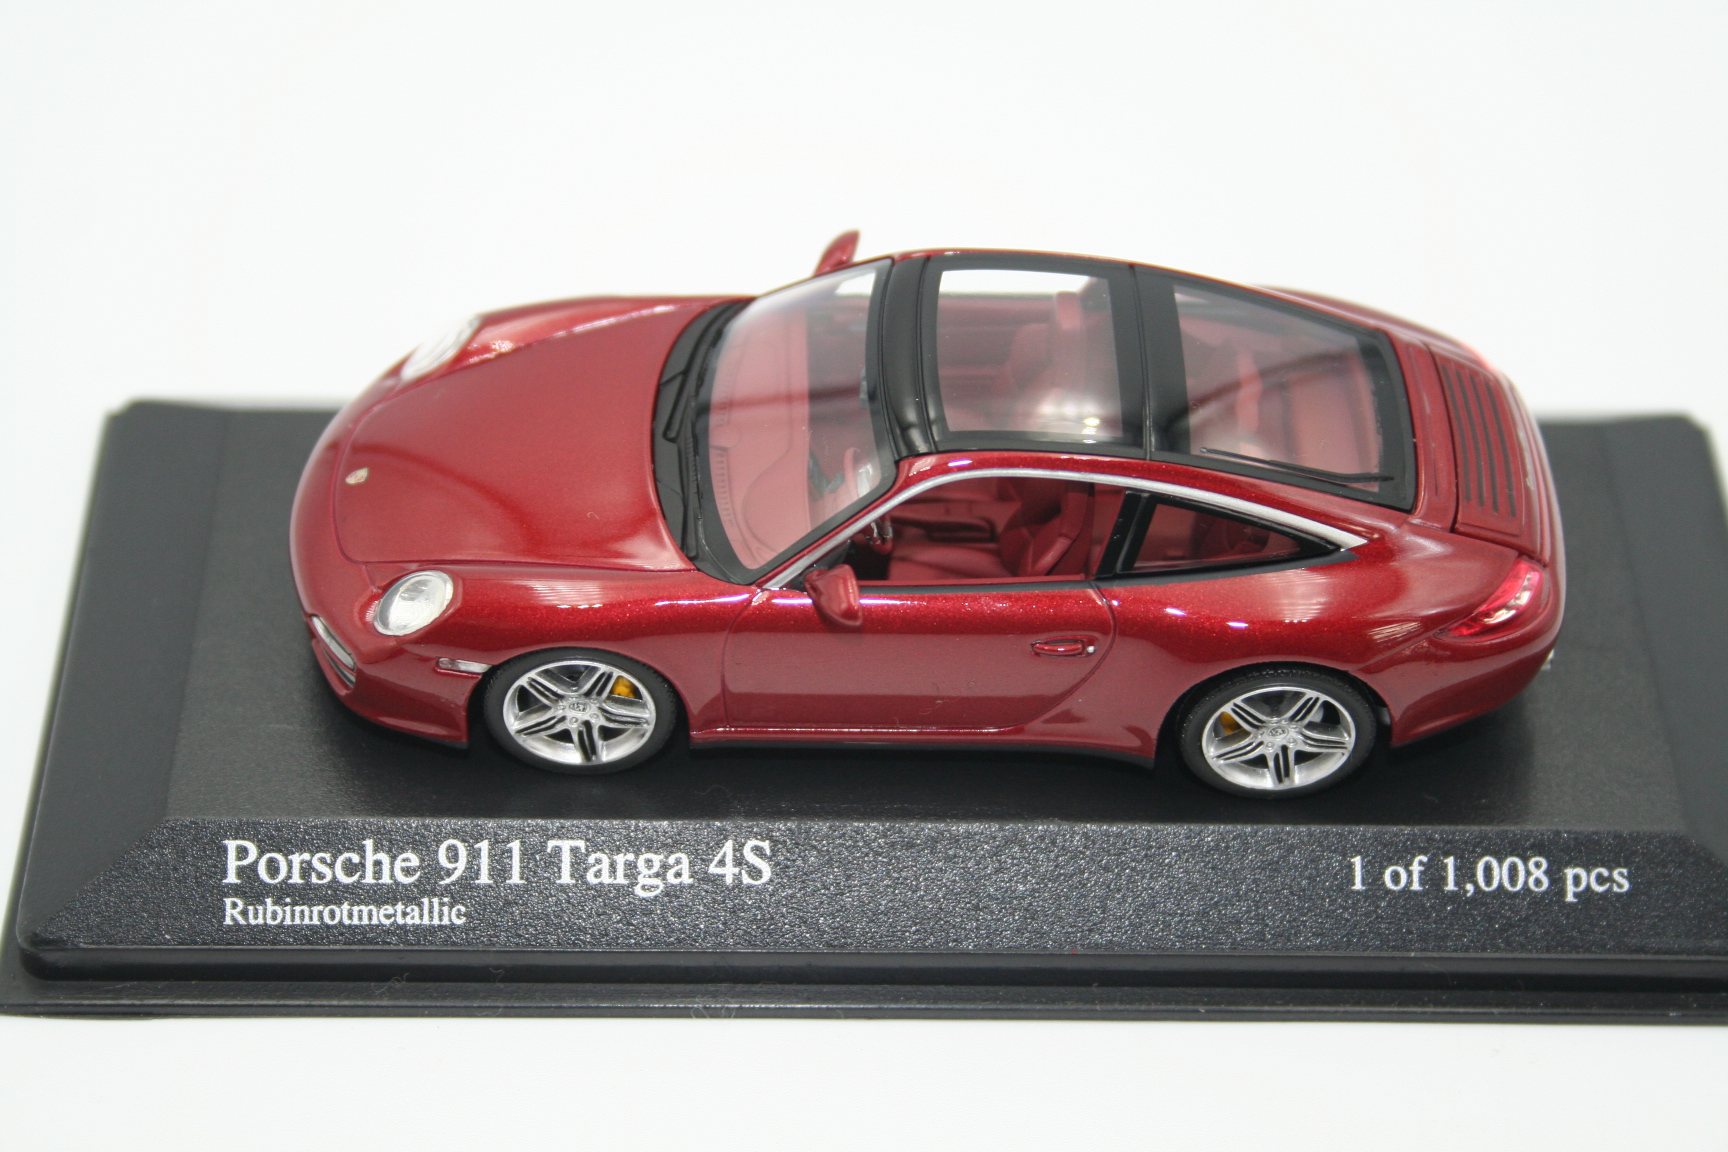 Porsche 911 Targa 4S (997) 2008 – CARSNTOY